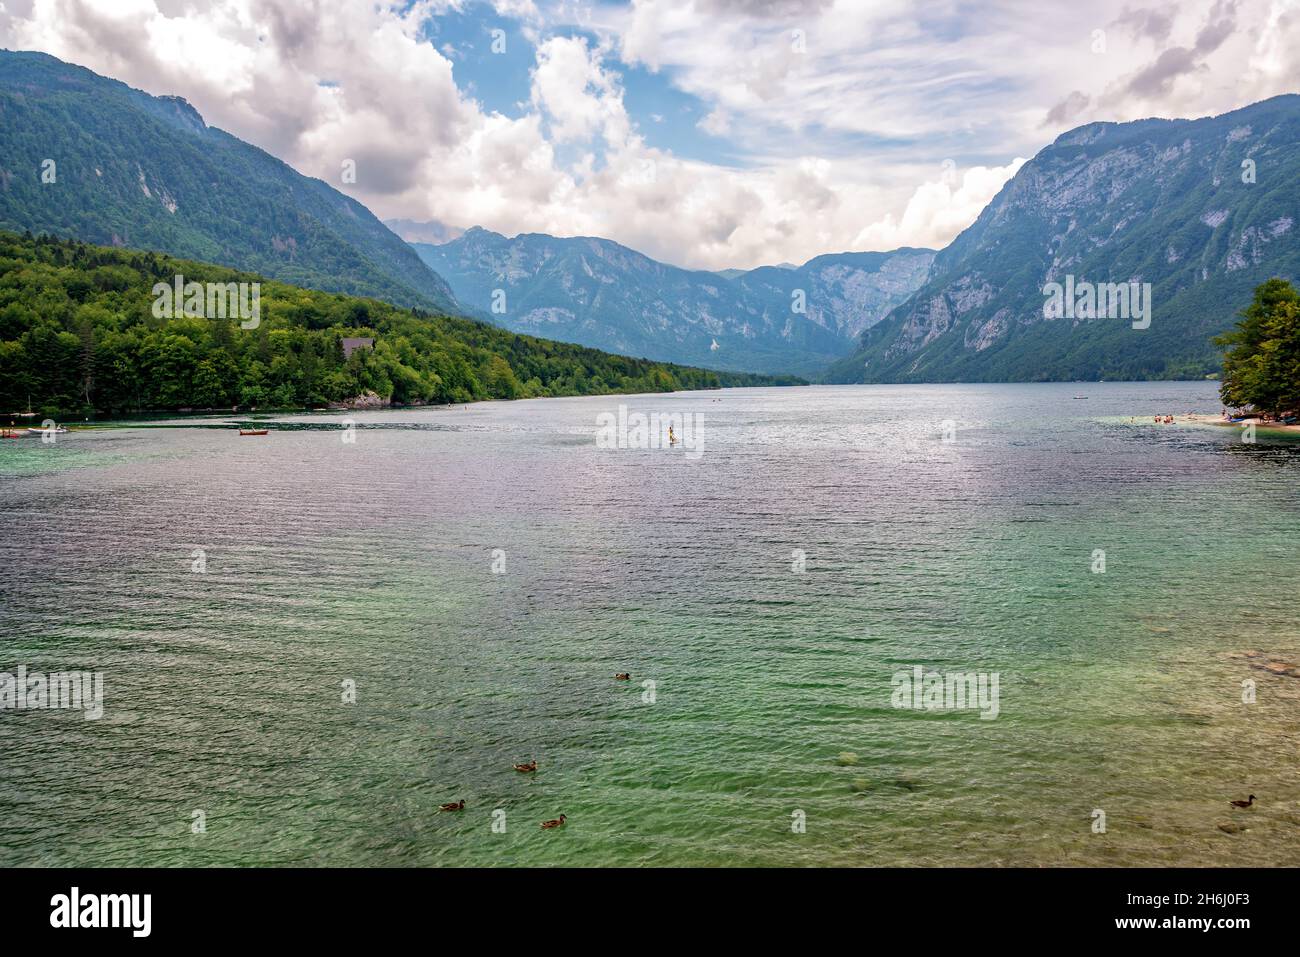 View of Lake Bohinj in Slovenia Stock Photo